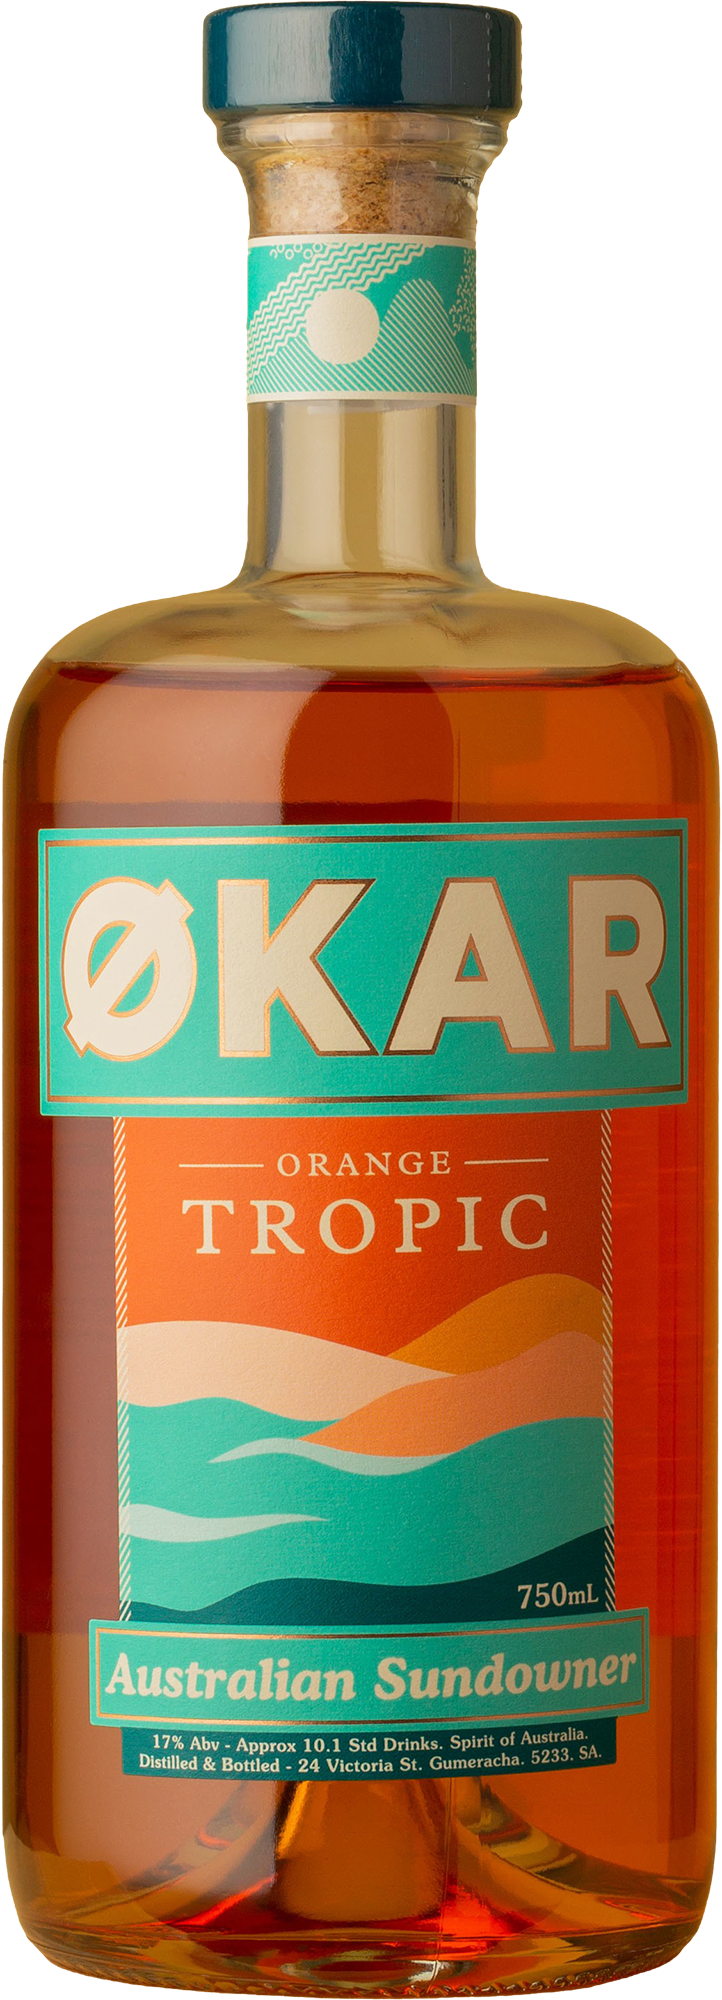 Økar - Orange Tropic Australian Sundowner 700mL